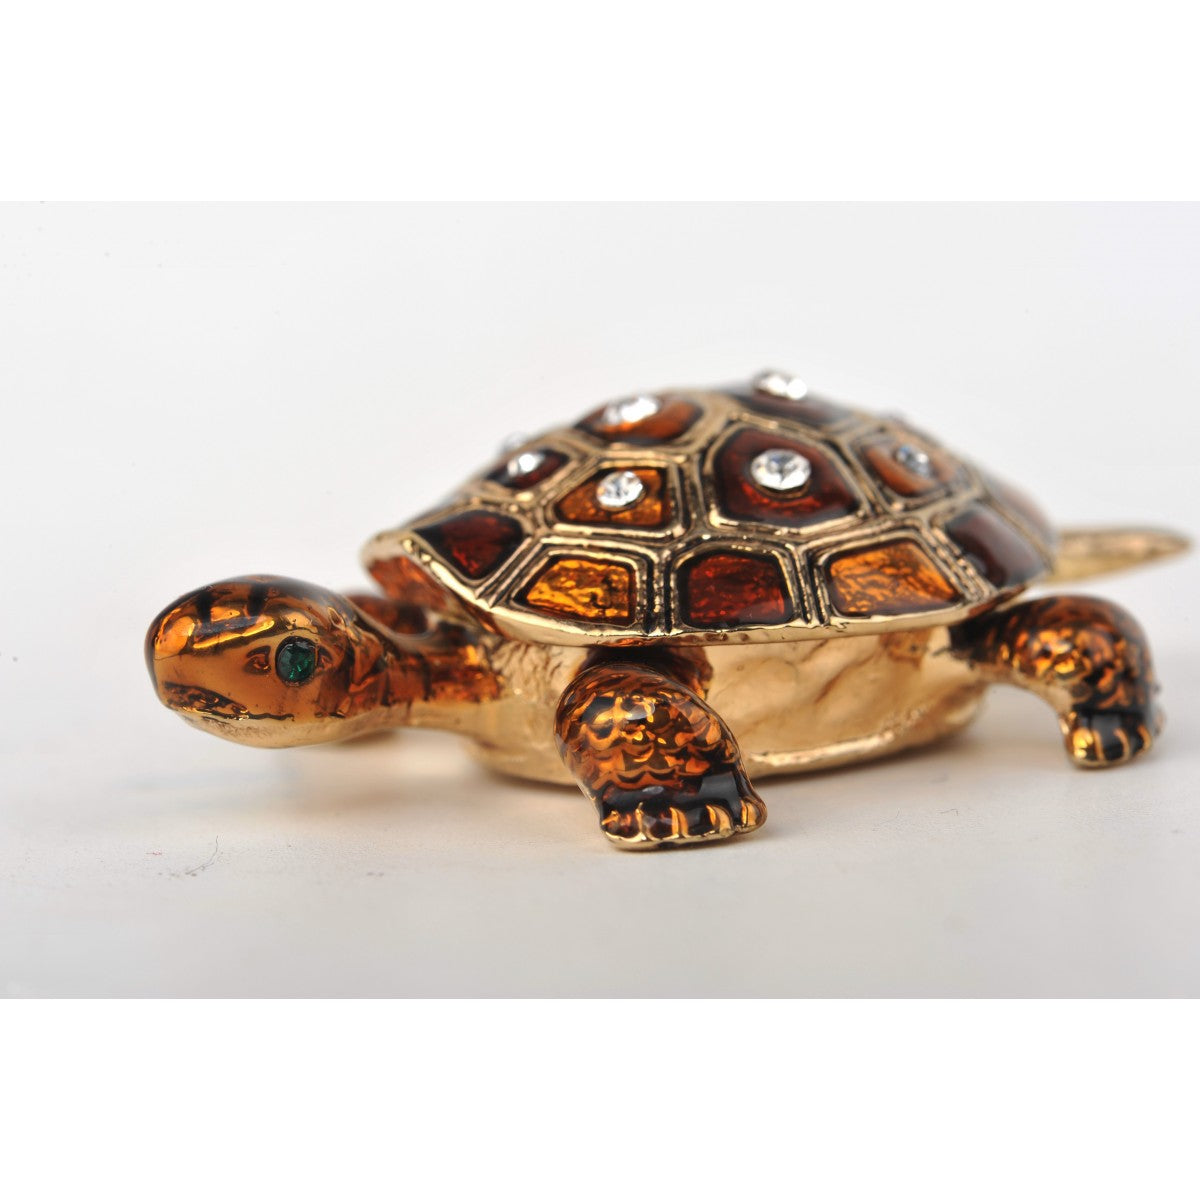 Amber turtle by Keren Kopal